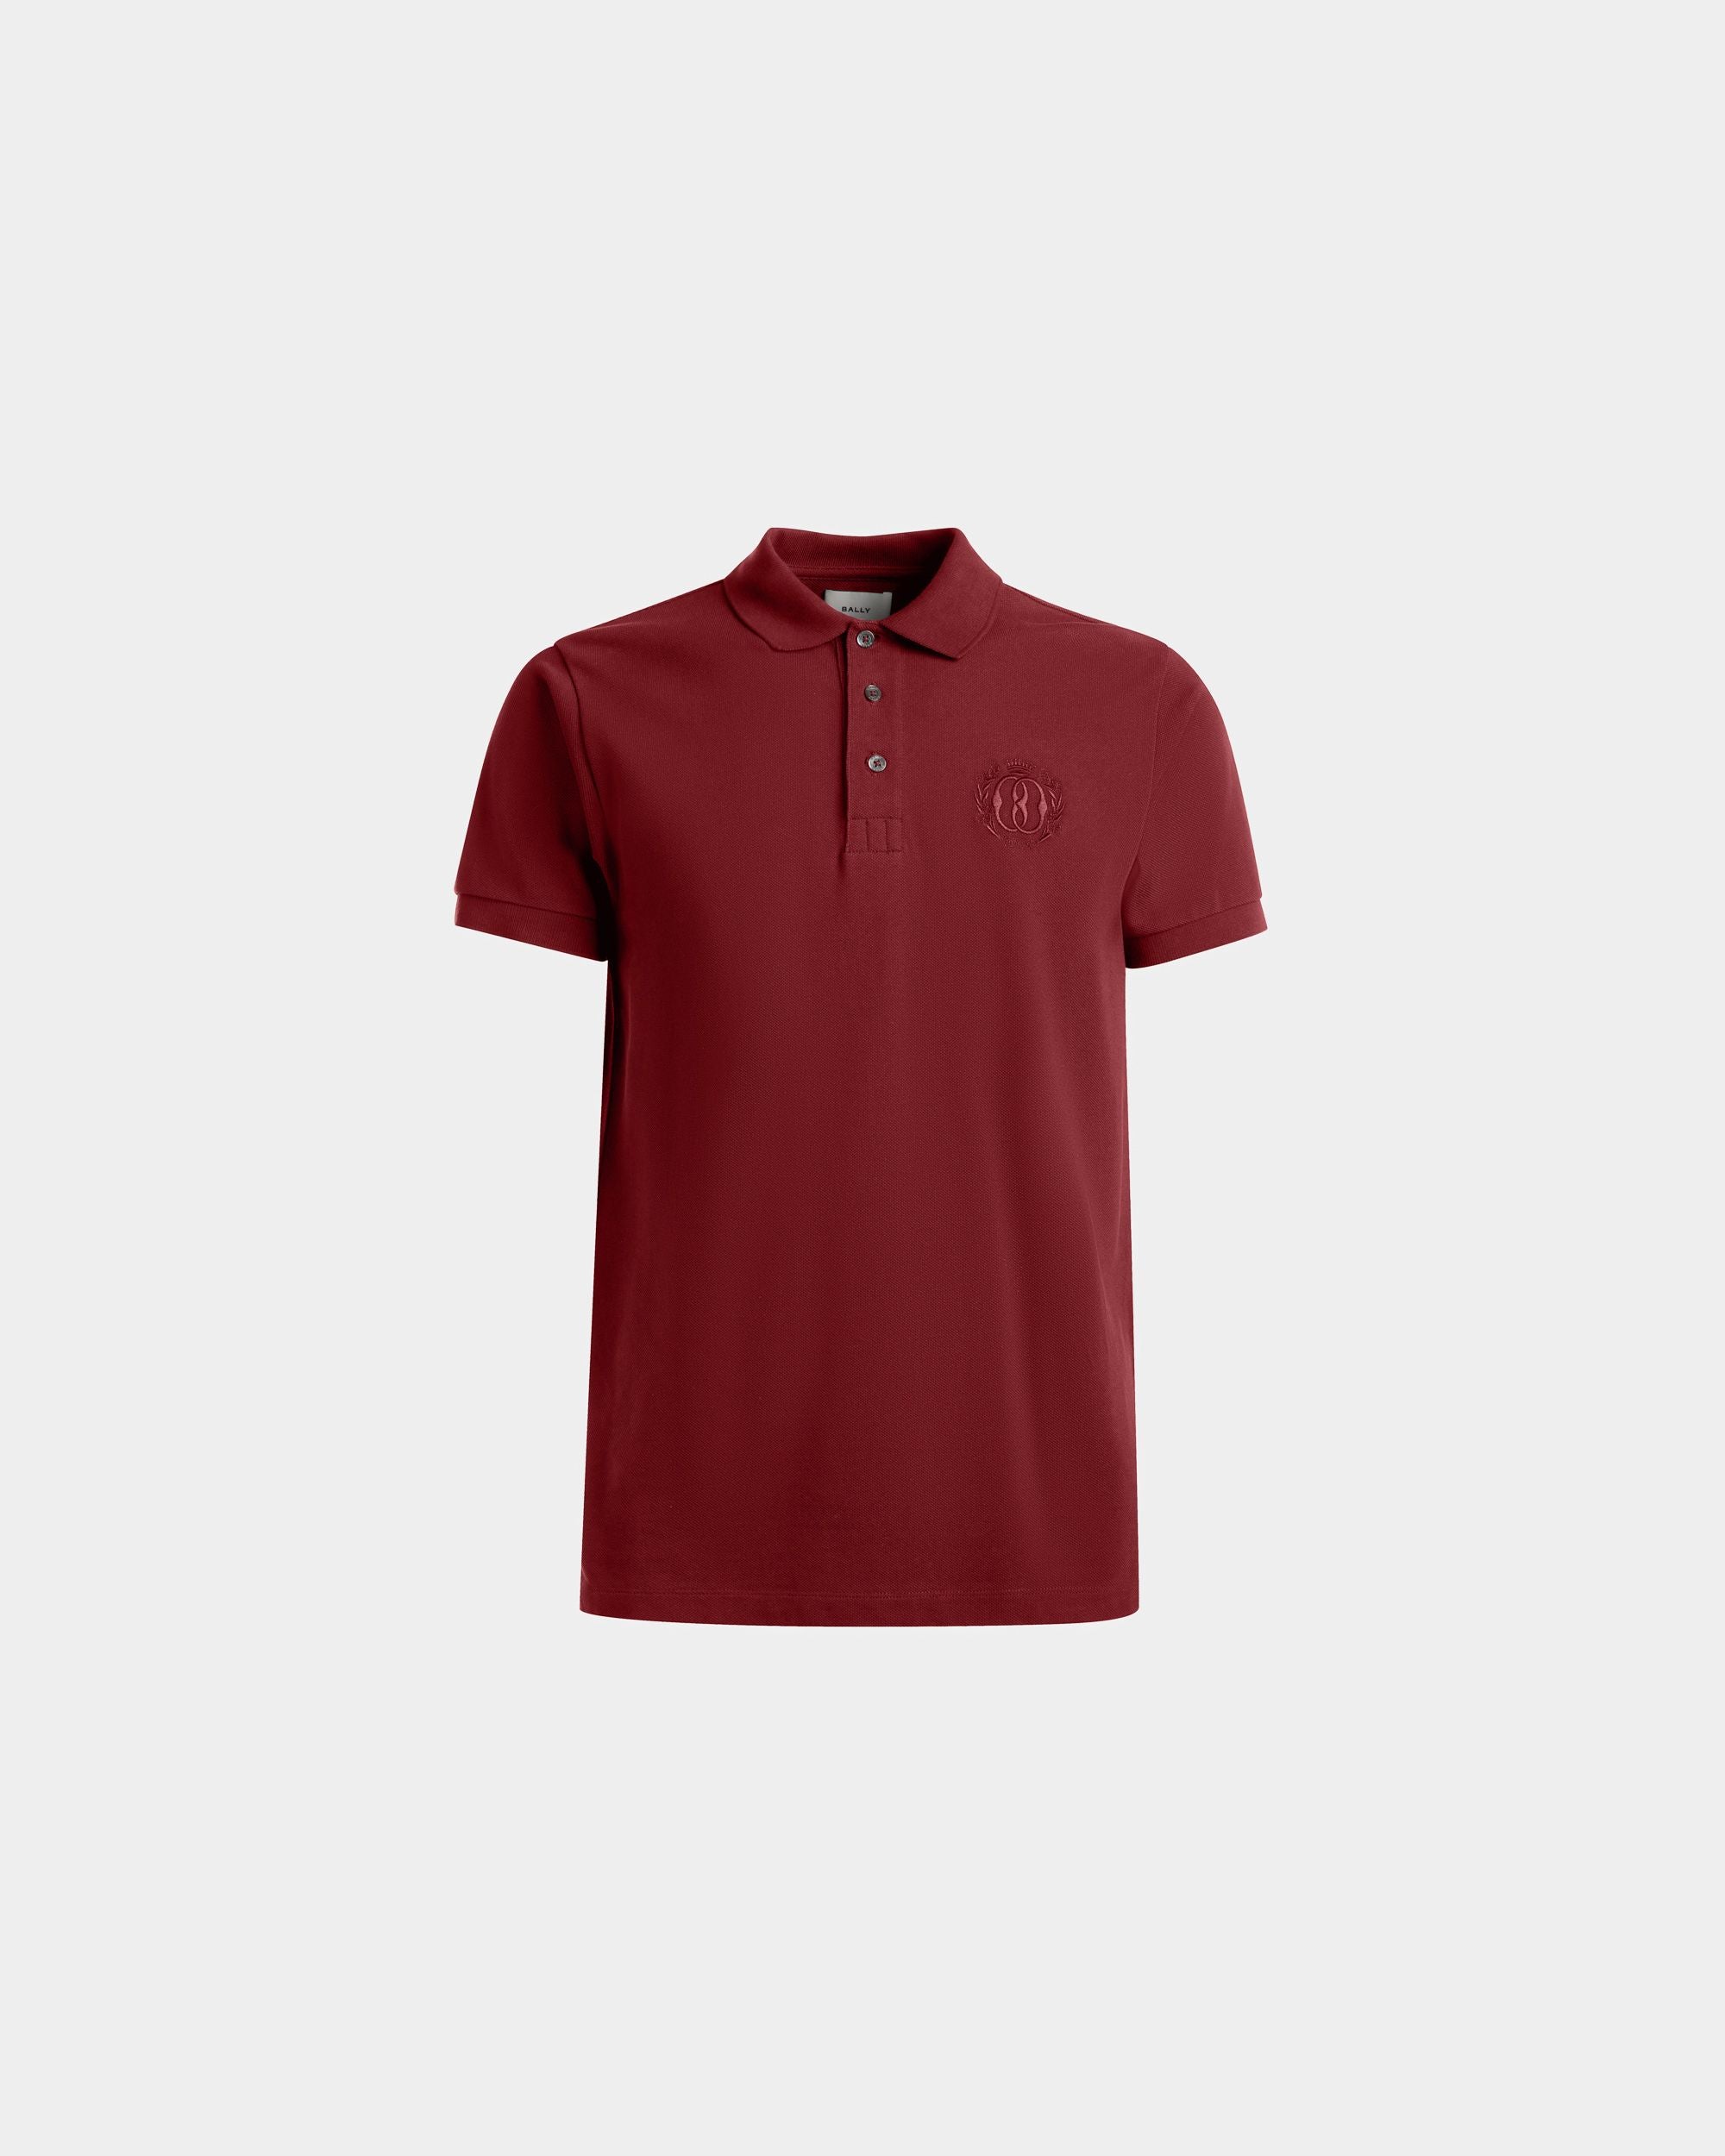 Emblem Poloshirt | Poloshirt für Herren | Bordeauxrote Baumwolle | Bally | Still Life Vorderseite